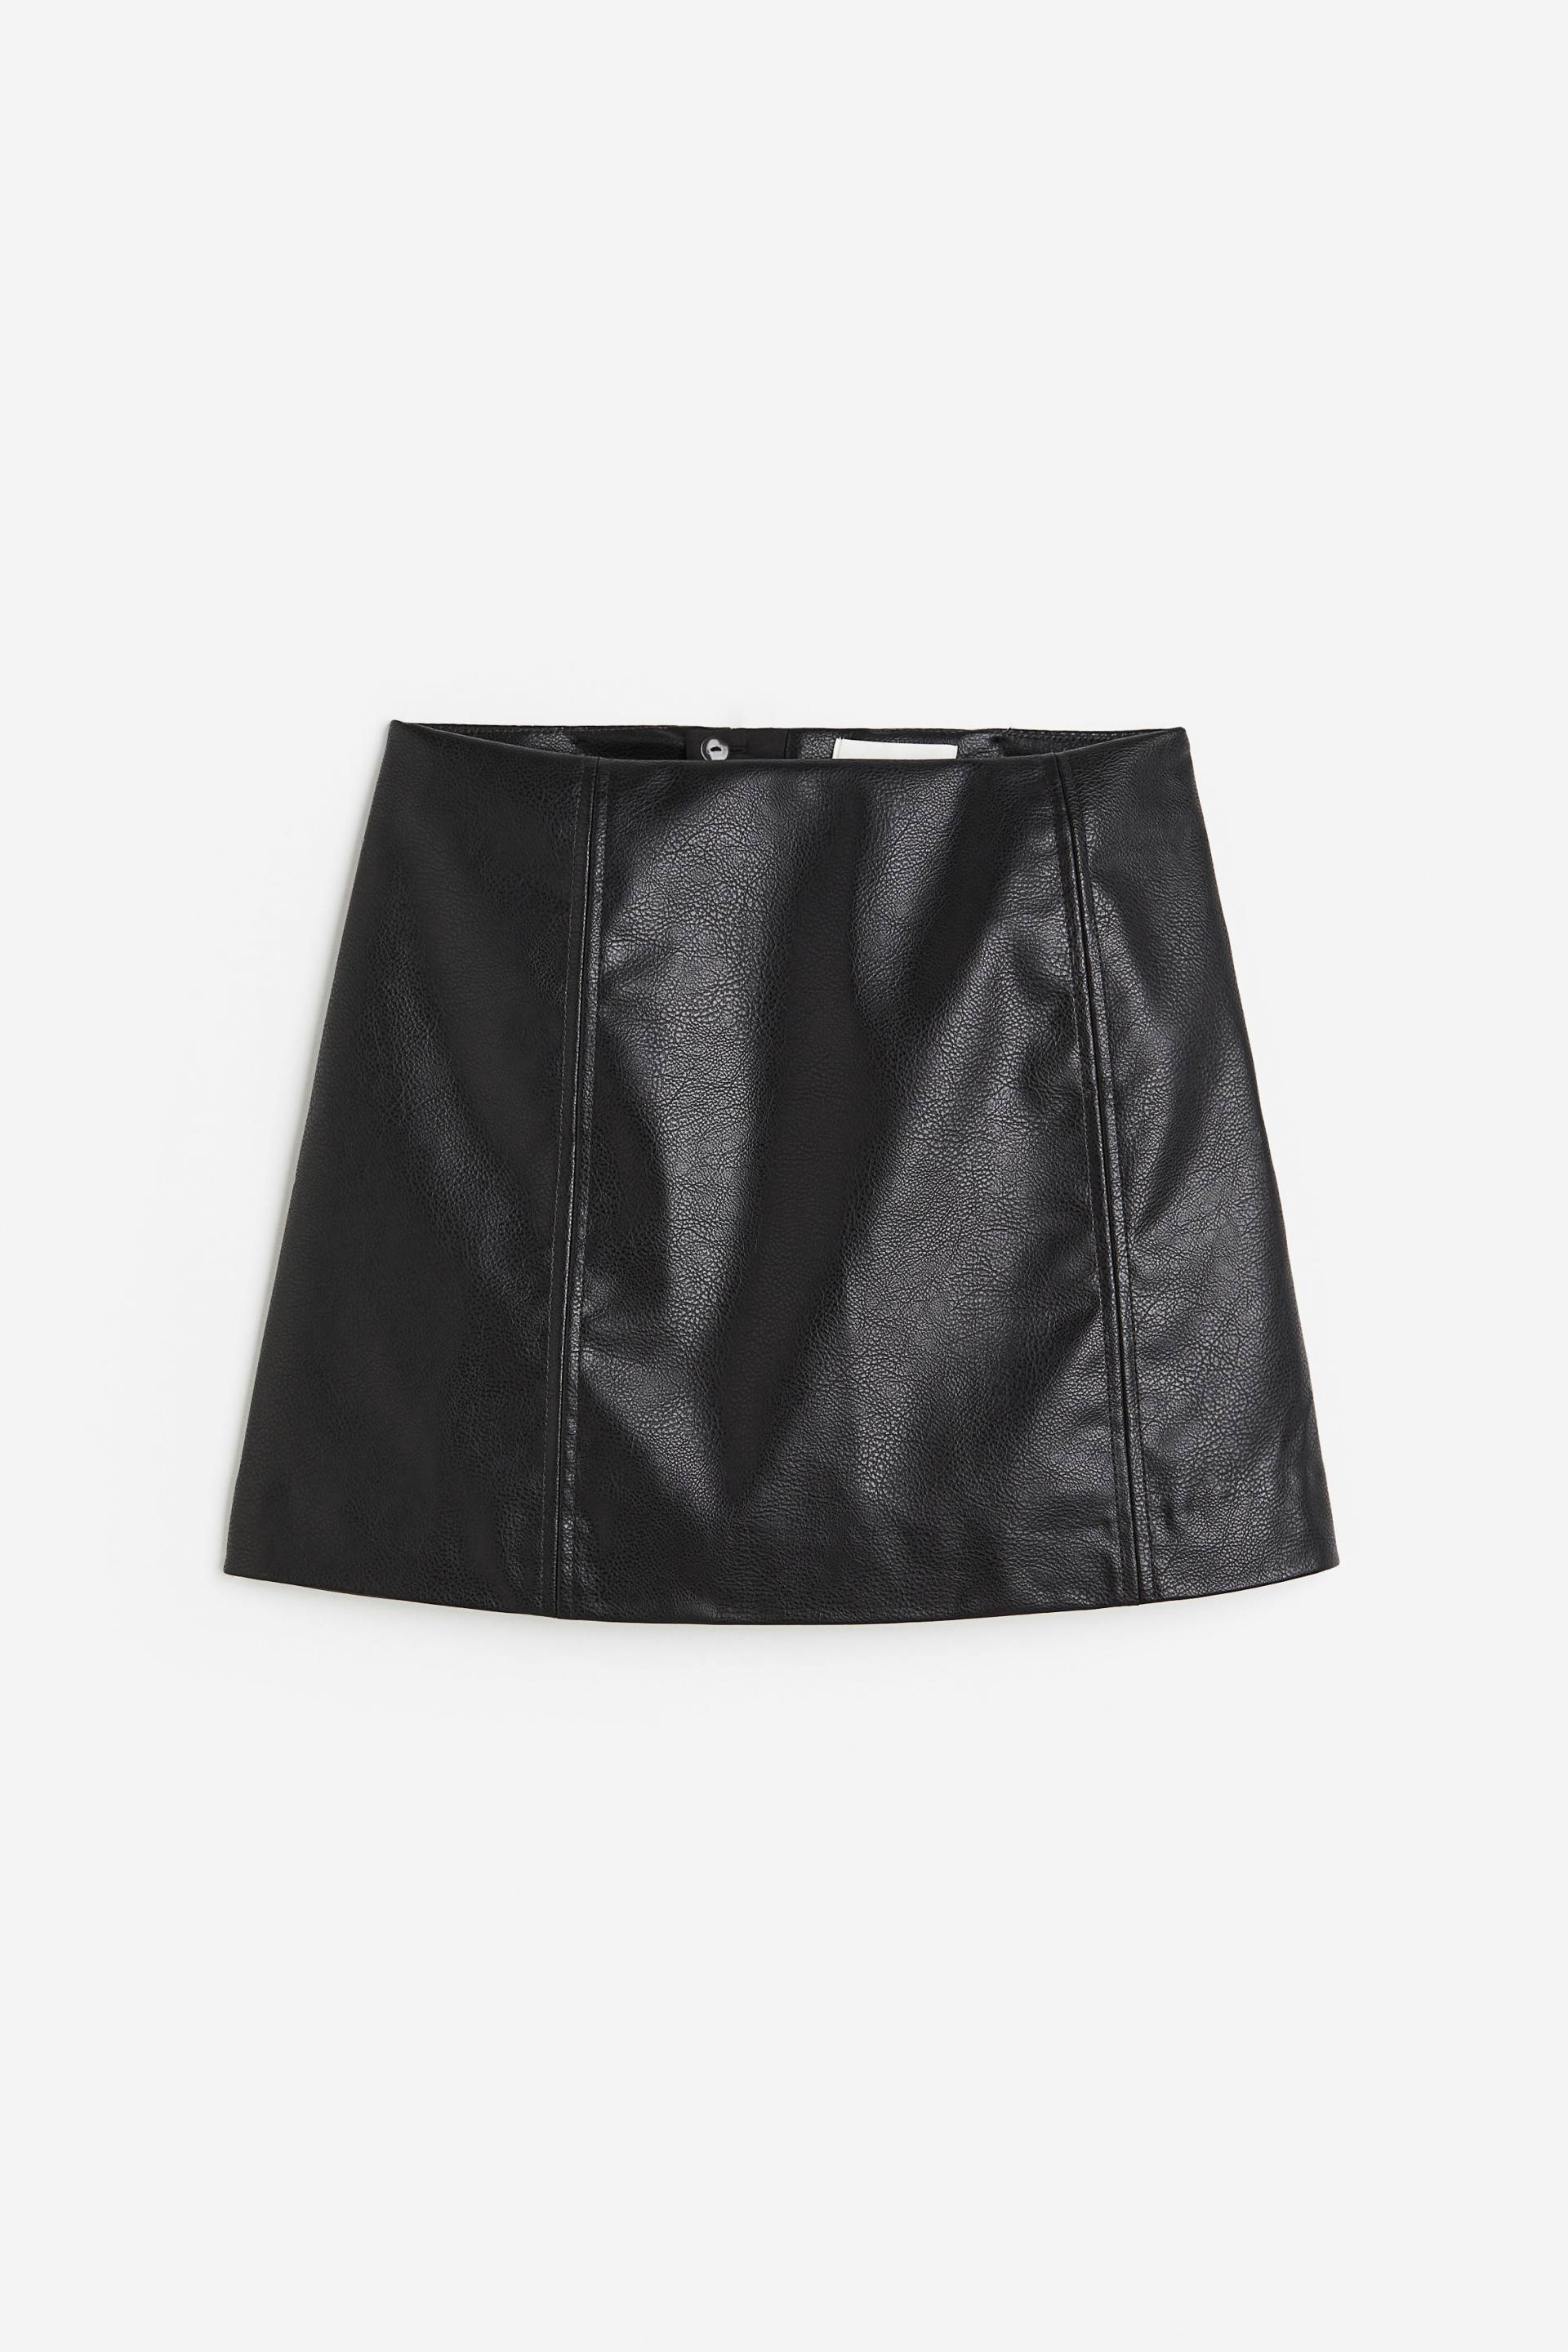 H&M Minirock Schwarz, Röcke in Größe 36. Farbe: Black von H&M